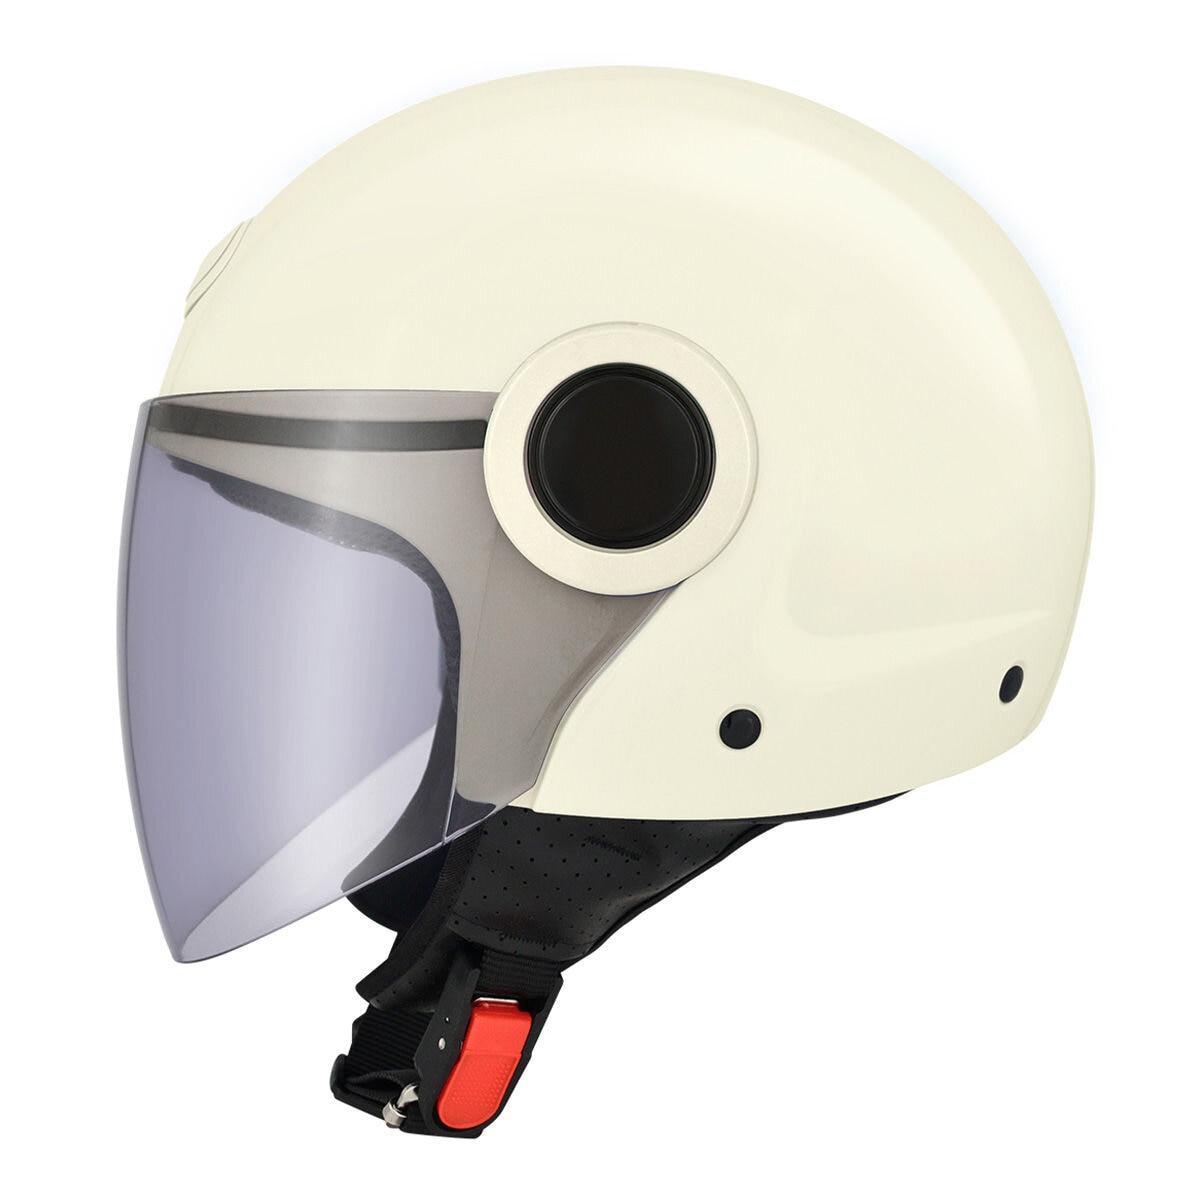 M2R 1/2罩安全帽 騎乘機車用防護頭盔 M-506 M